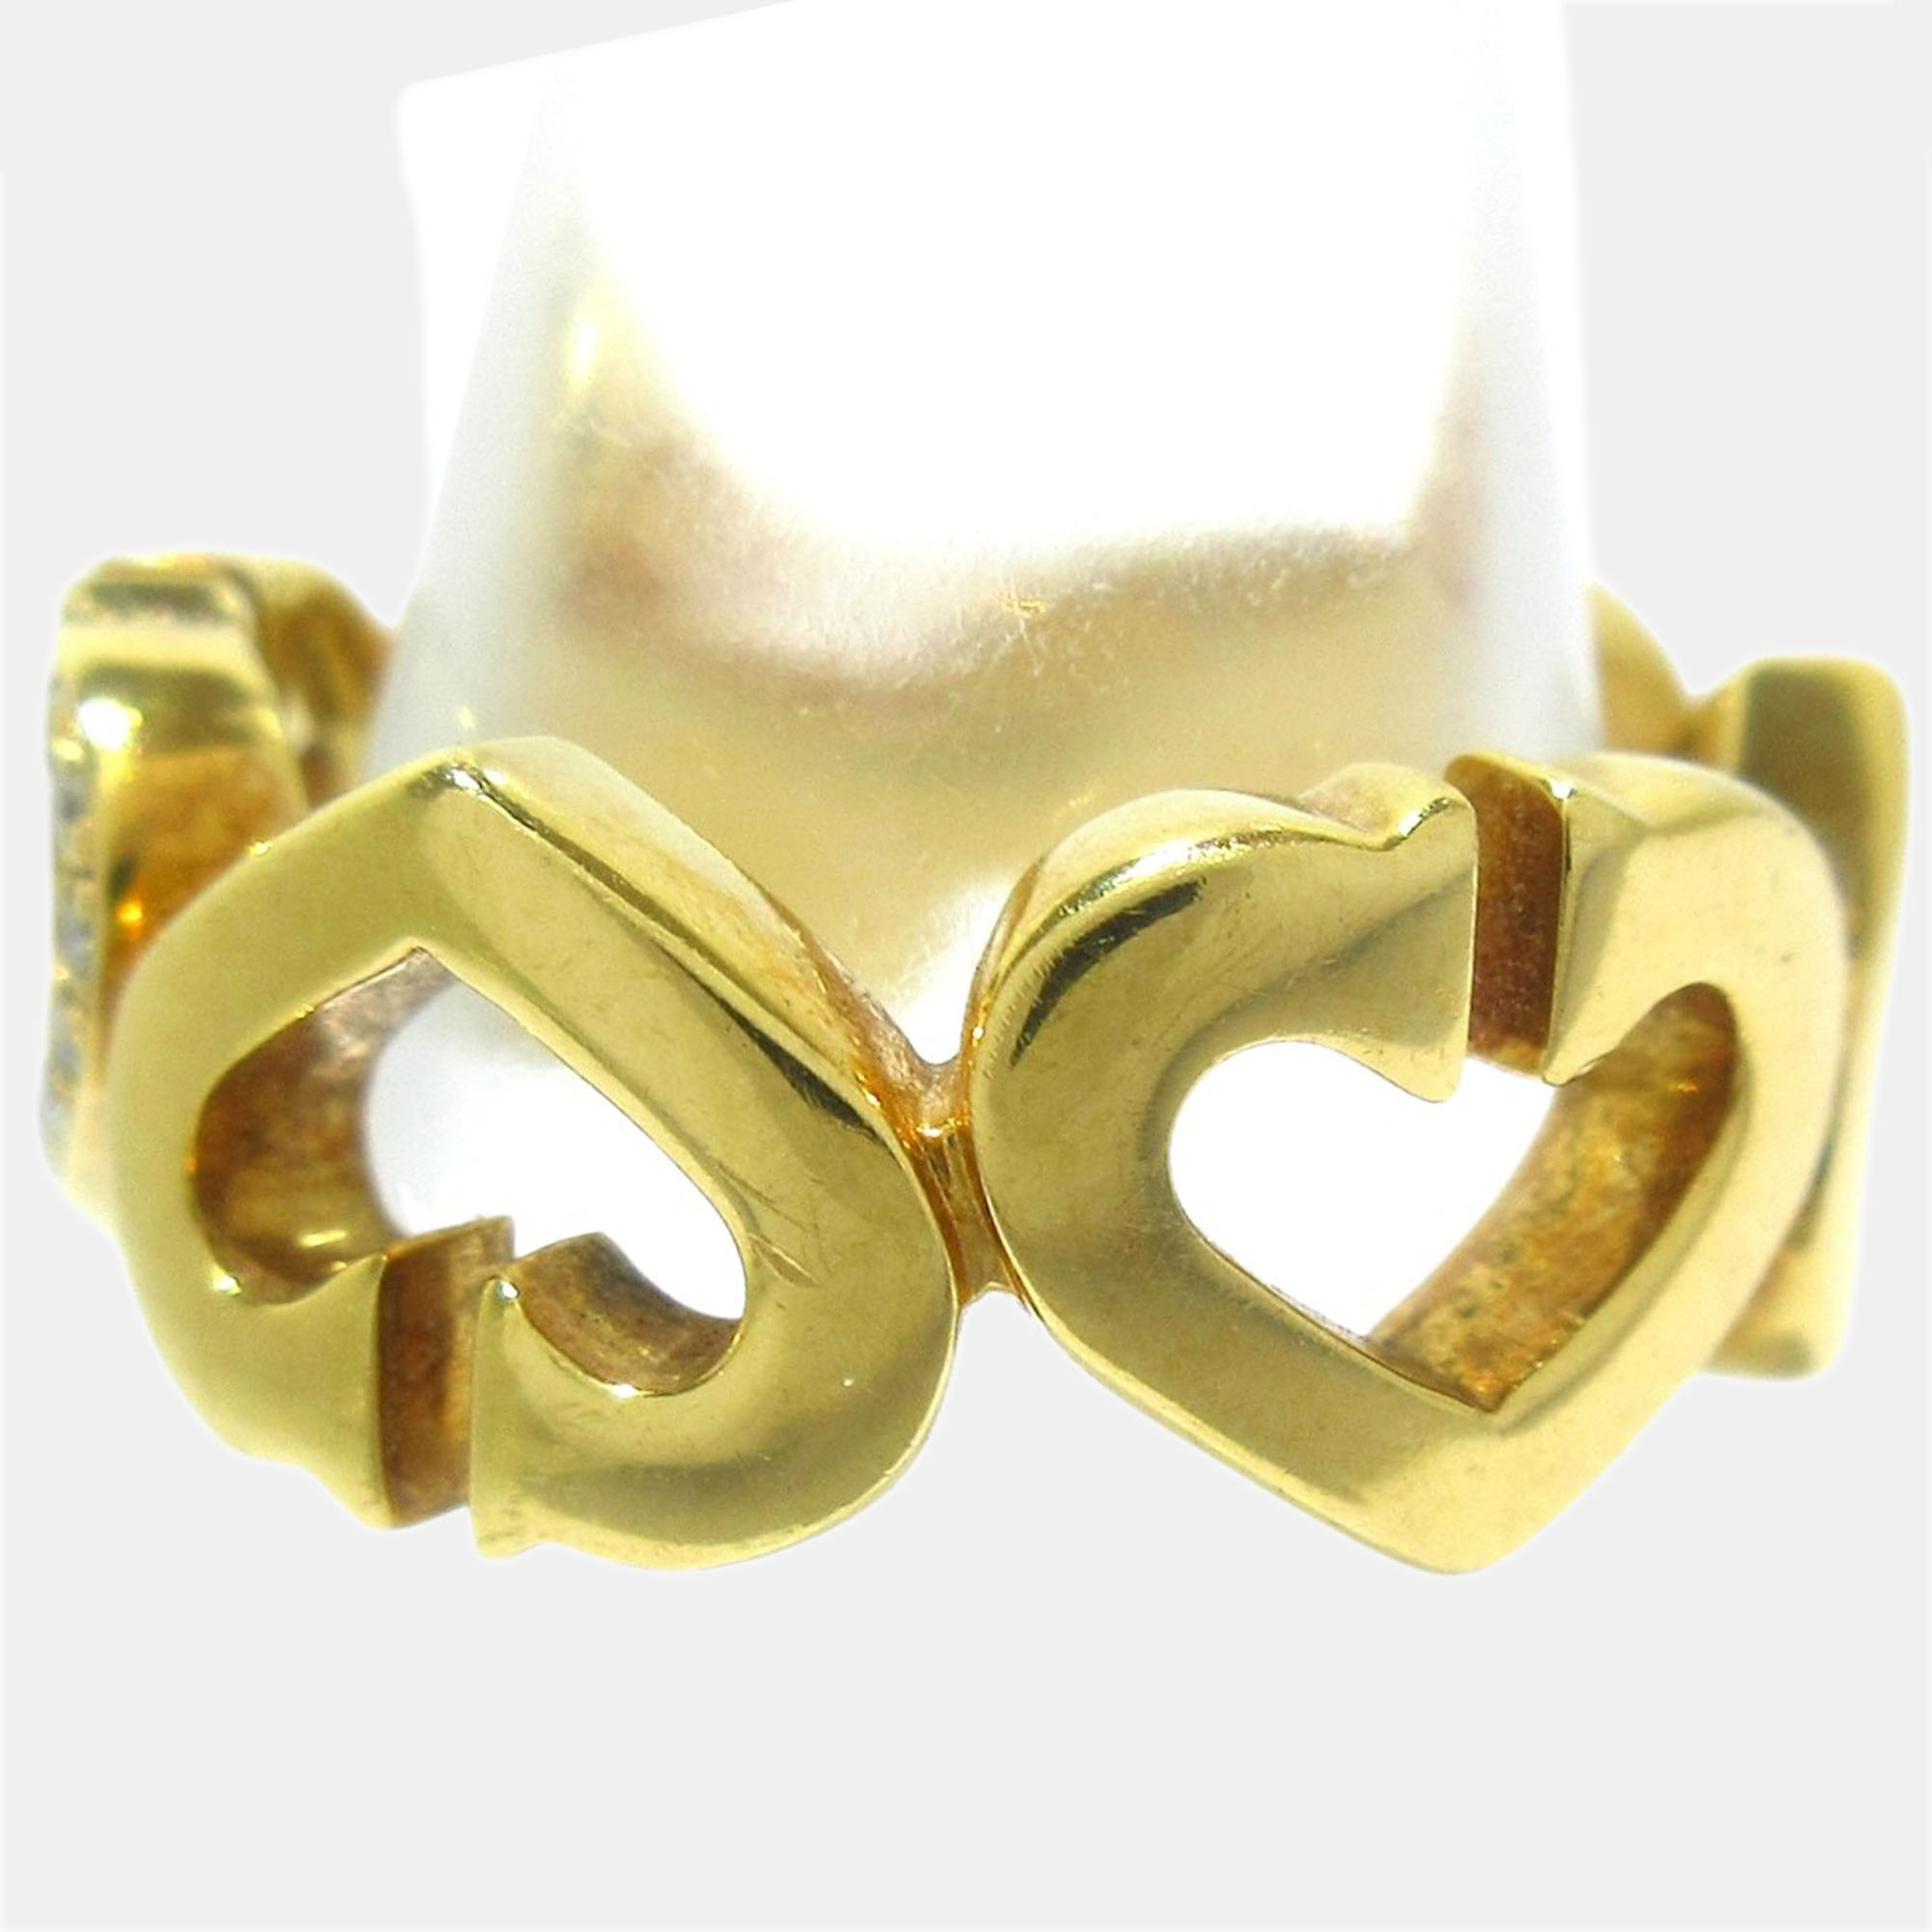 Cartier Heart C 18K Yellow Gold Diamond Ring EU 46